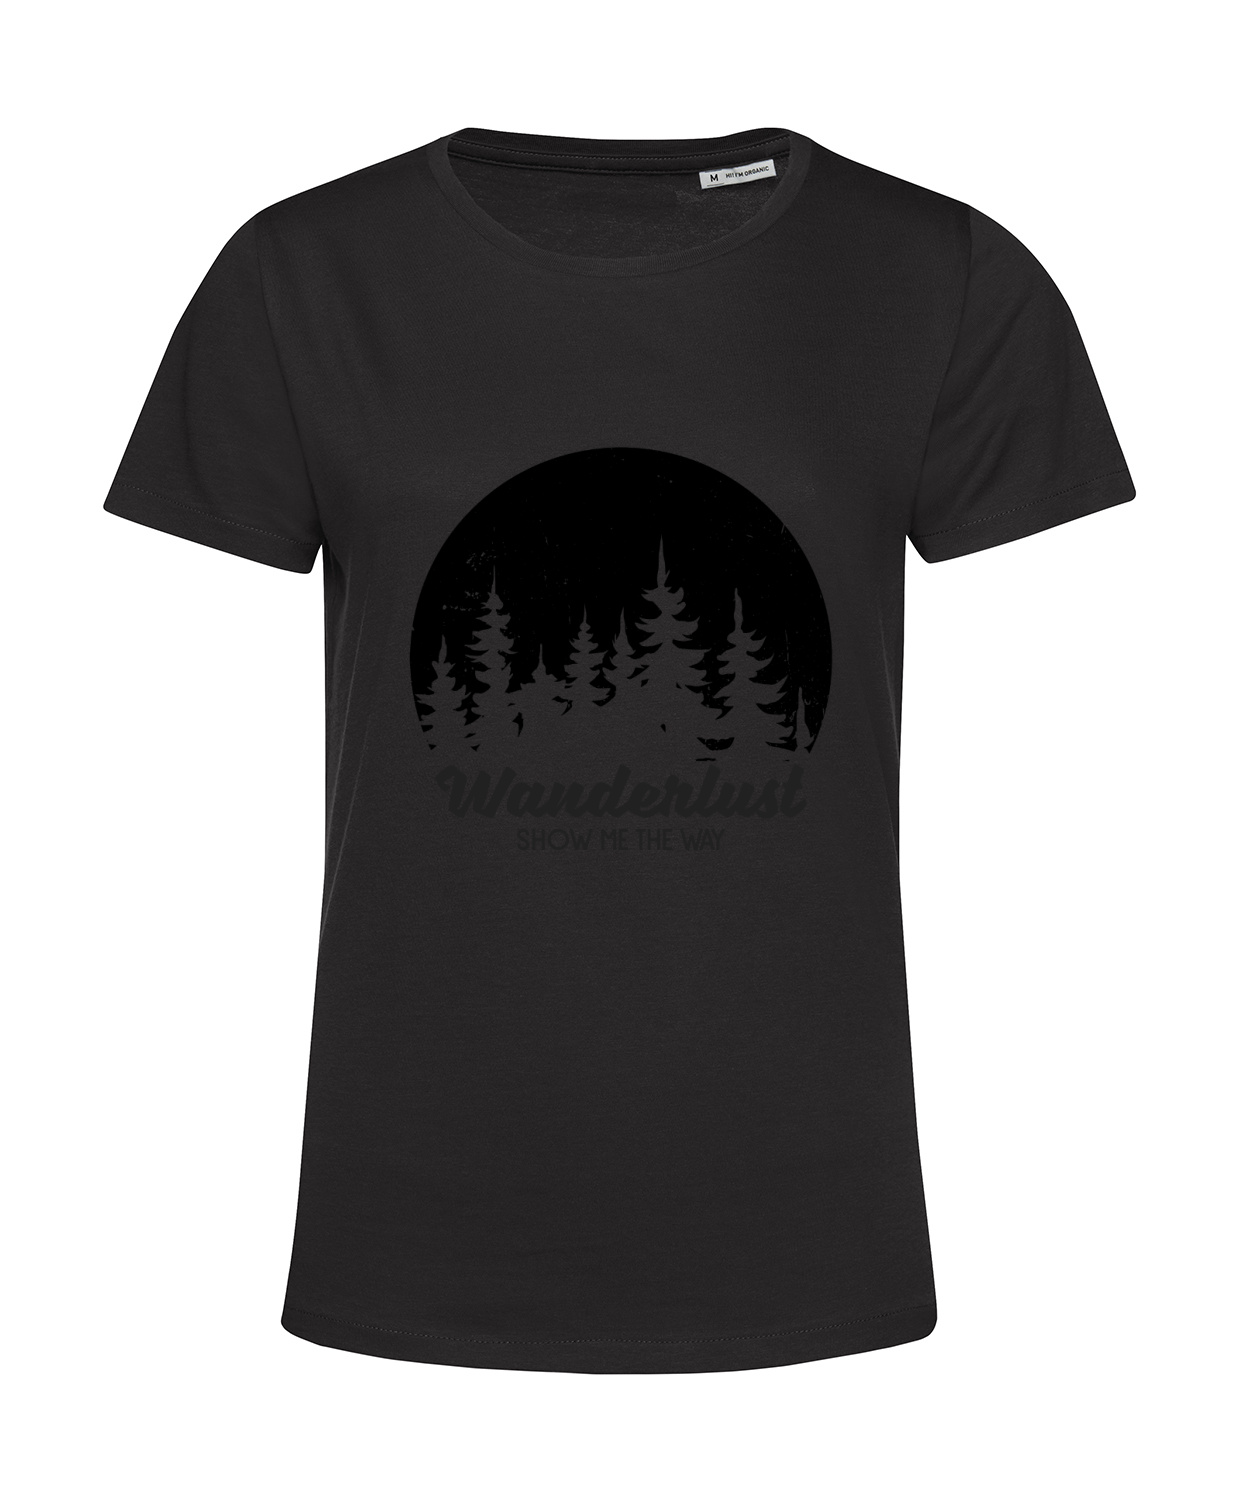 Nachhaltiges T-Shirt Damen Outdoor - Wanderlust